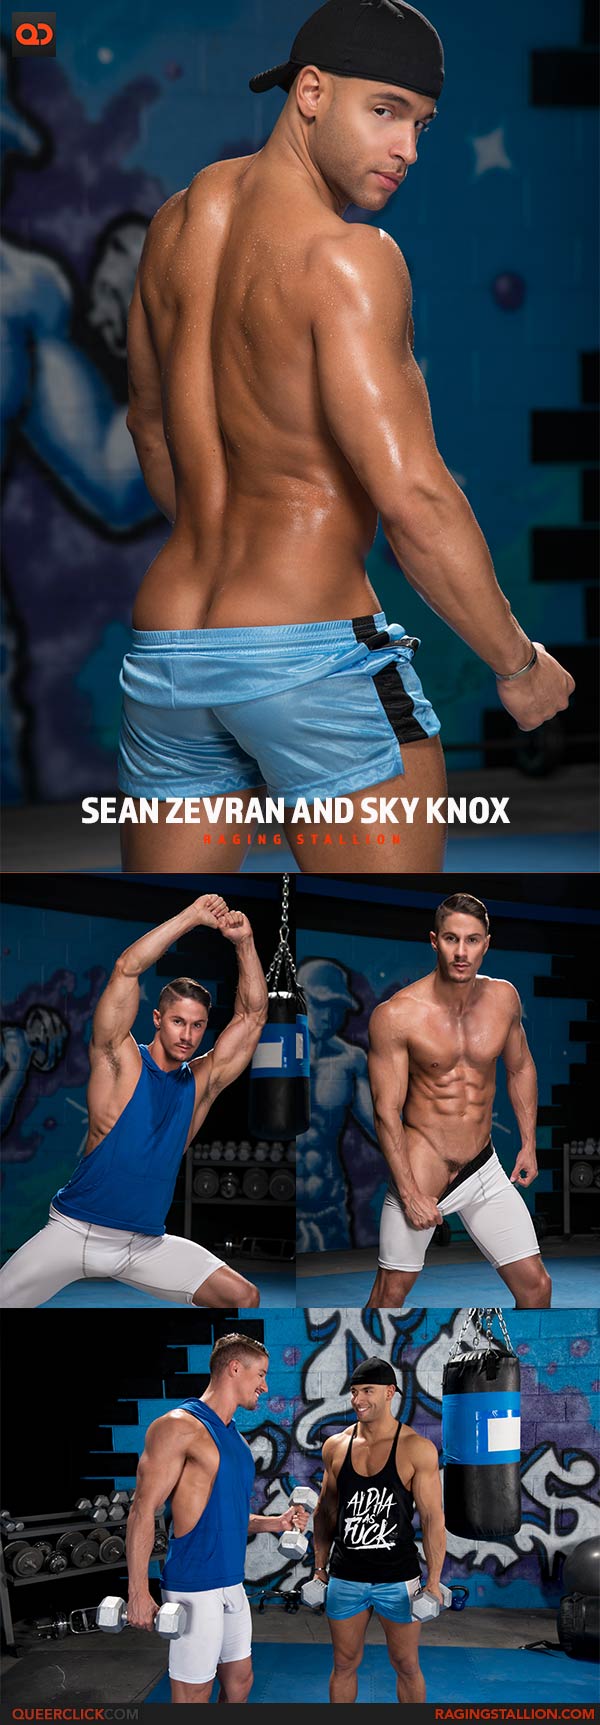 RagingStallion: Sean Zevran and Sky Knox